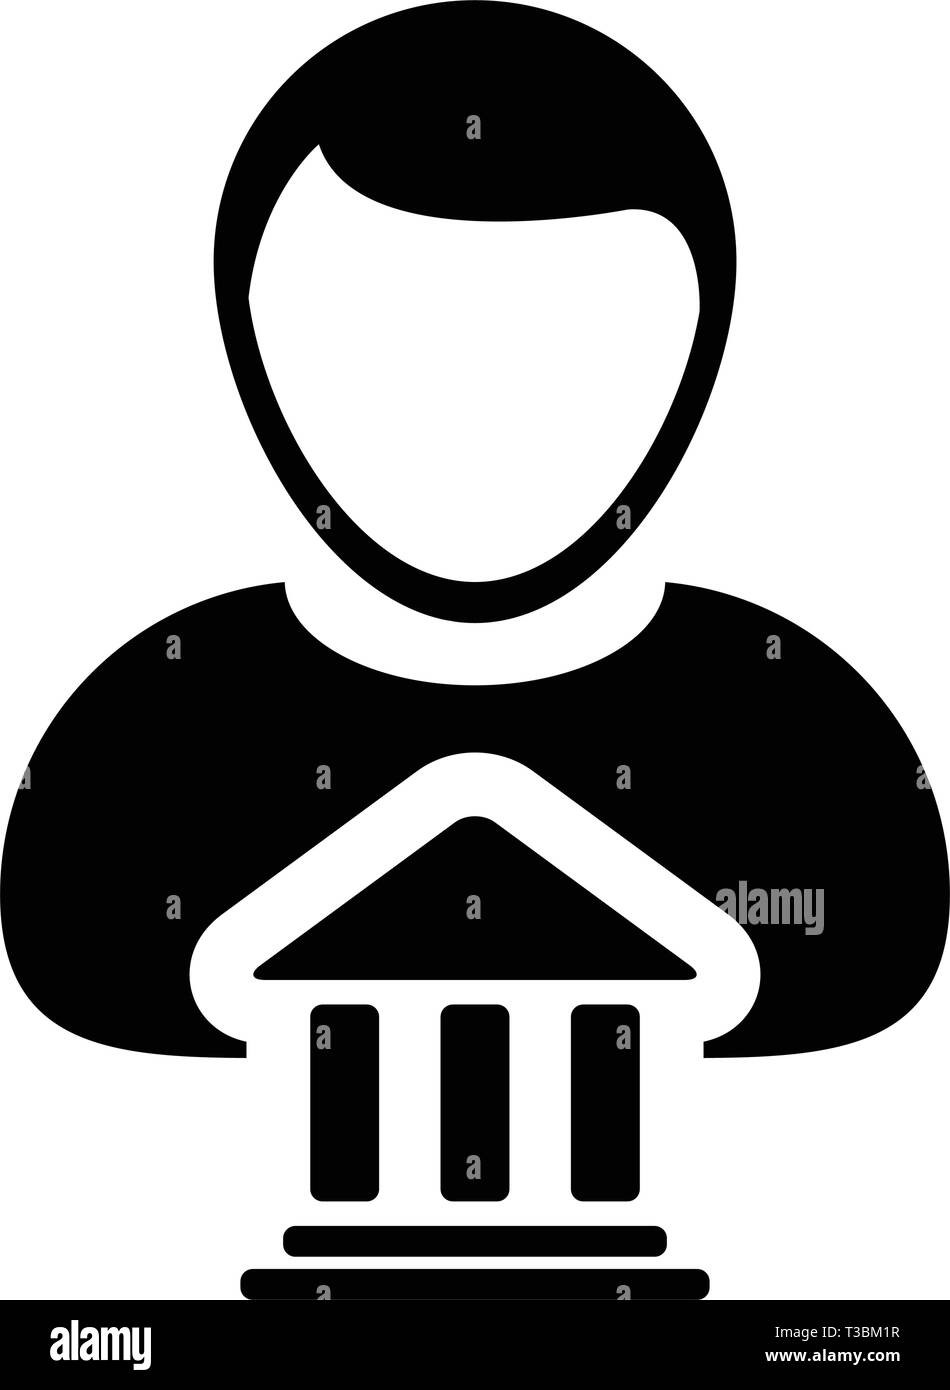 Finanzen Symbol Vektor mit männliche Person Profil Avatar mit Gebäude Symbol für Geld und Finanzen in der glyphe Piktogramm Abbildung Stock Vektor